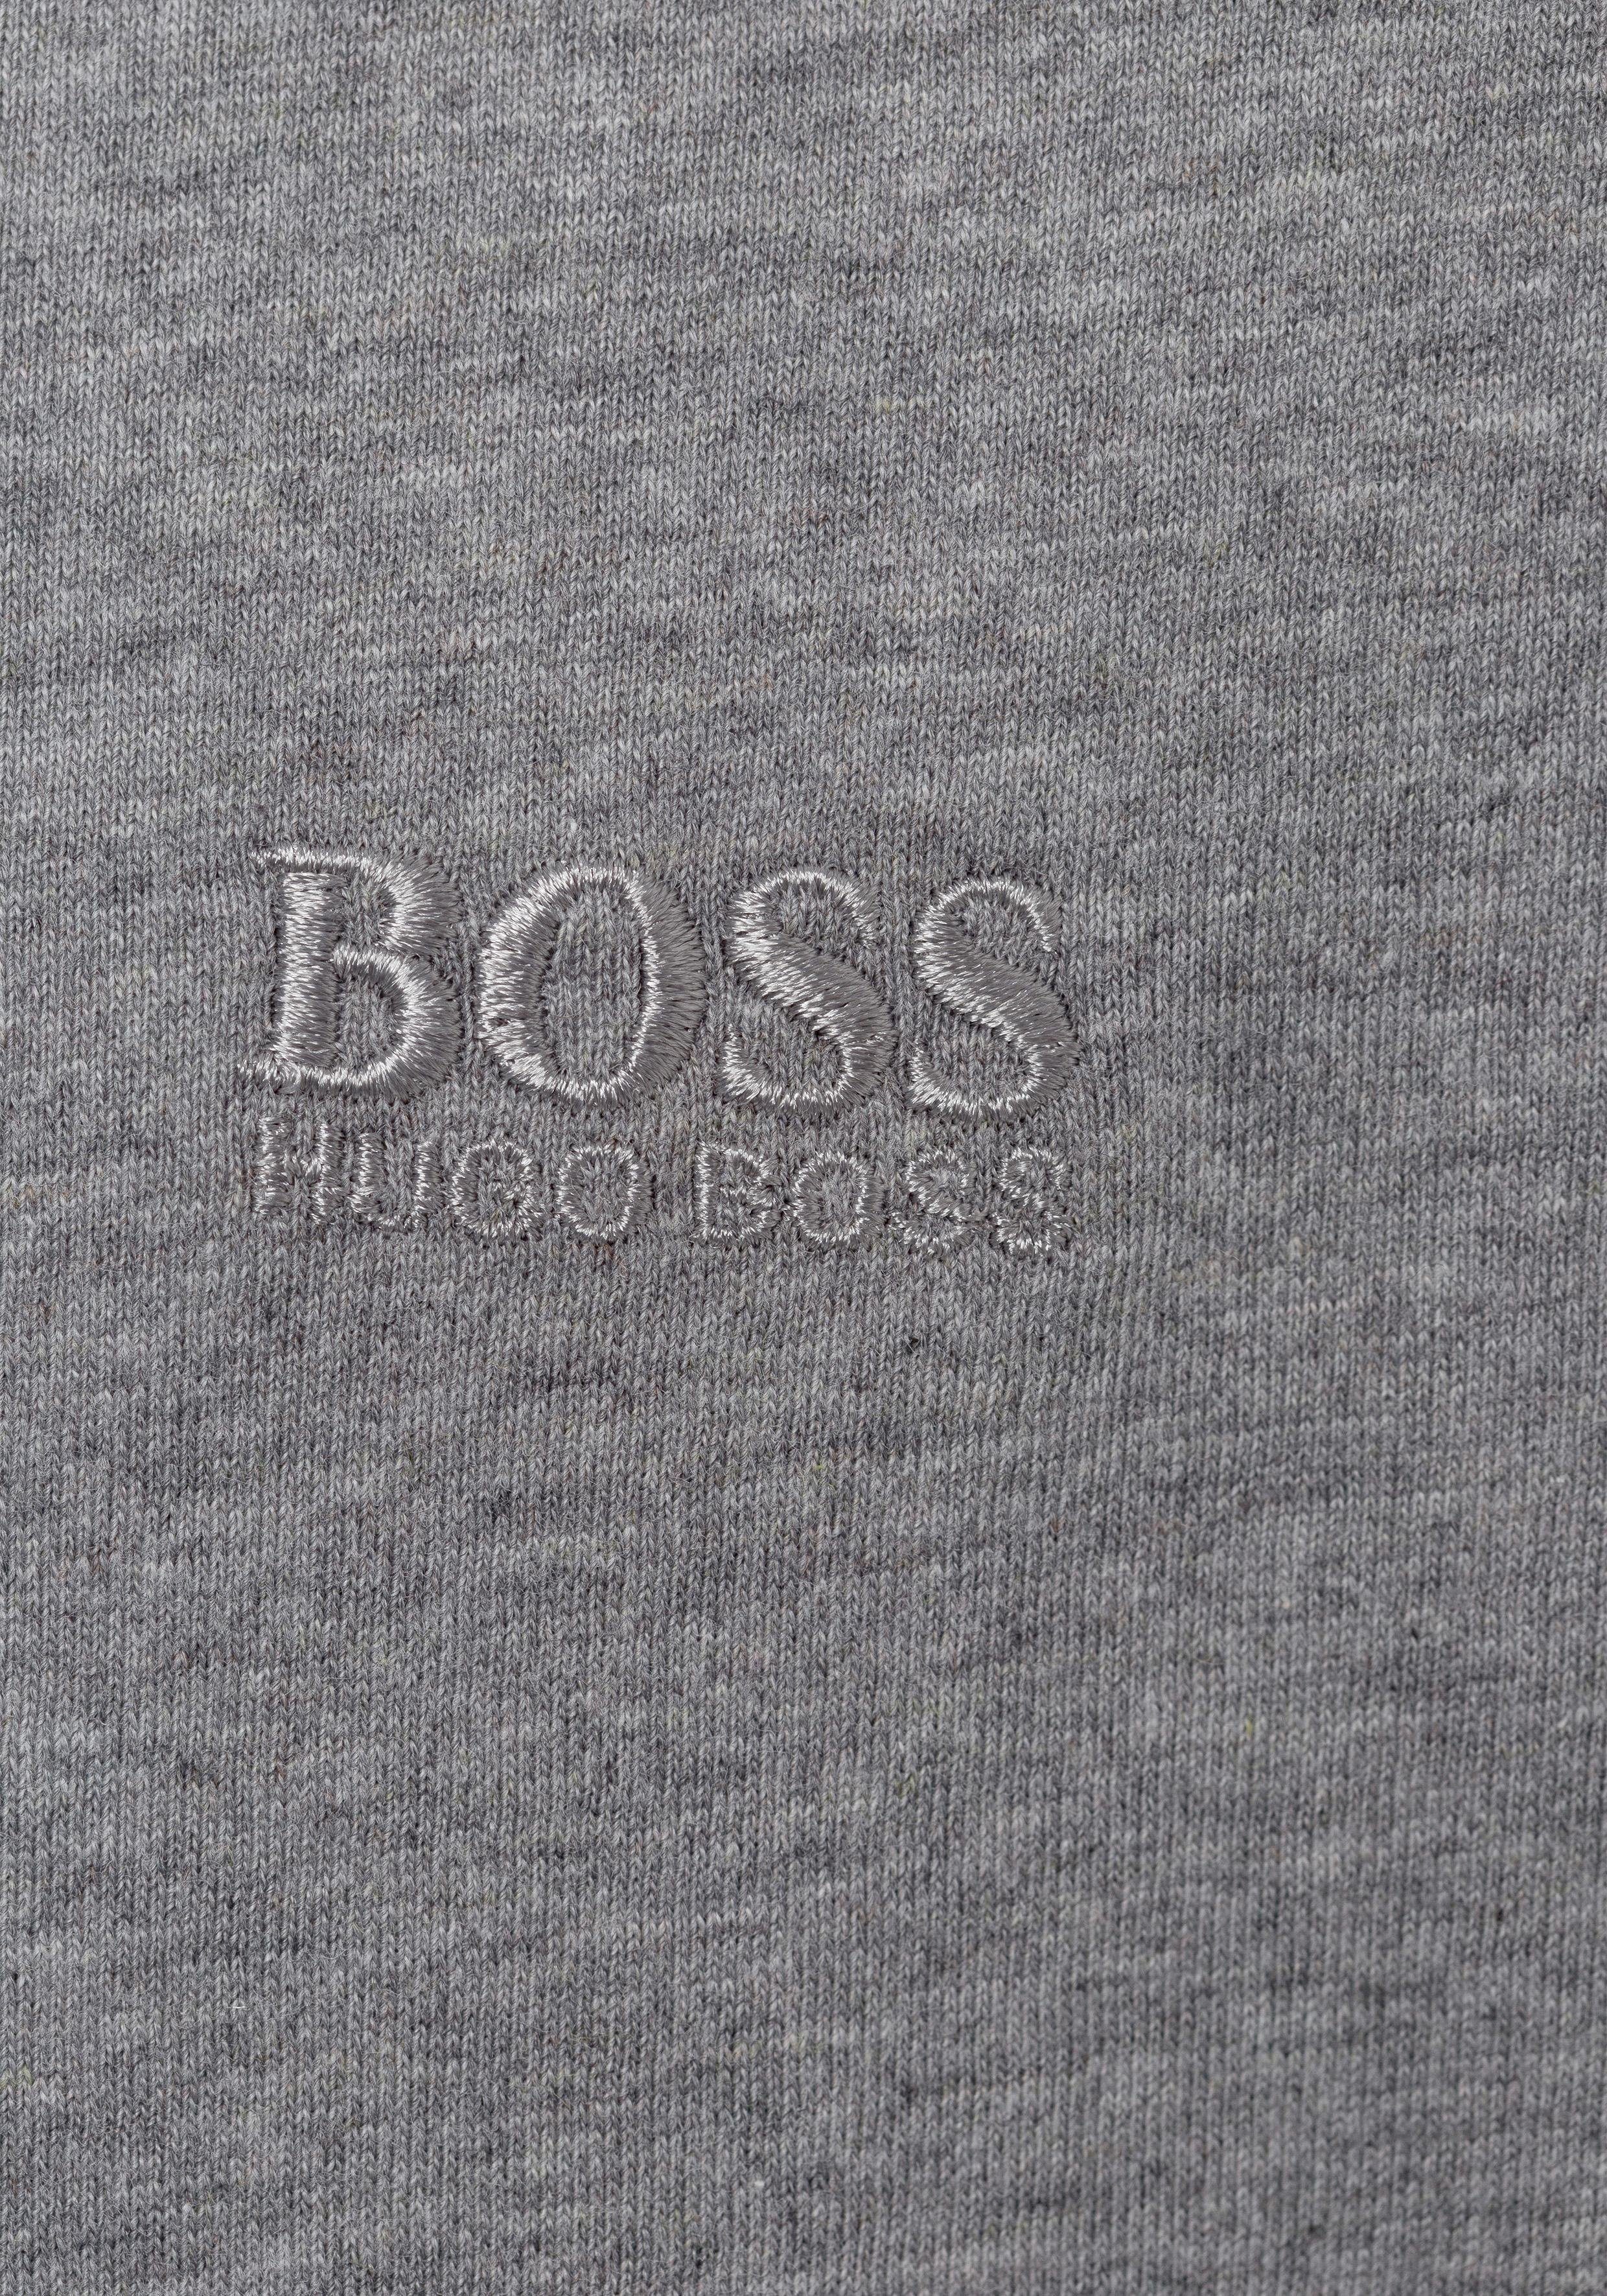 HUGO BOSS T-Shirt schwarz (Packung) CO assorted pre-pack, grau-meliert, V-Shirt 3P VN